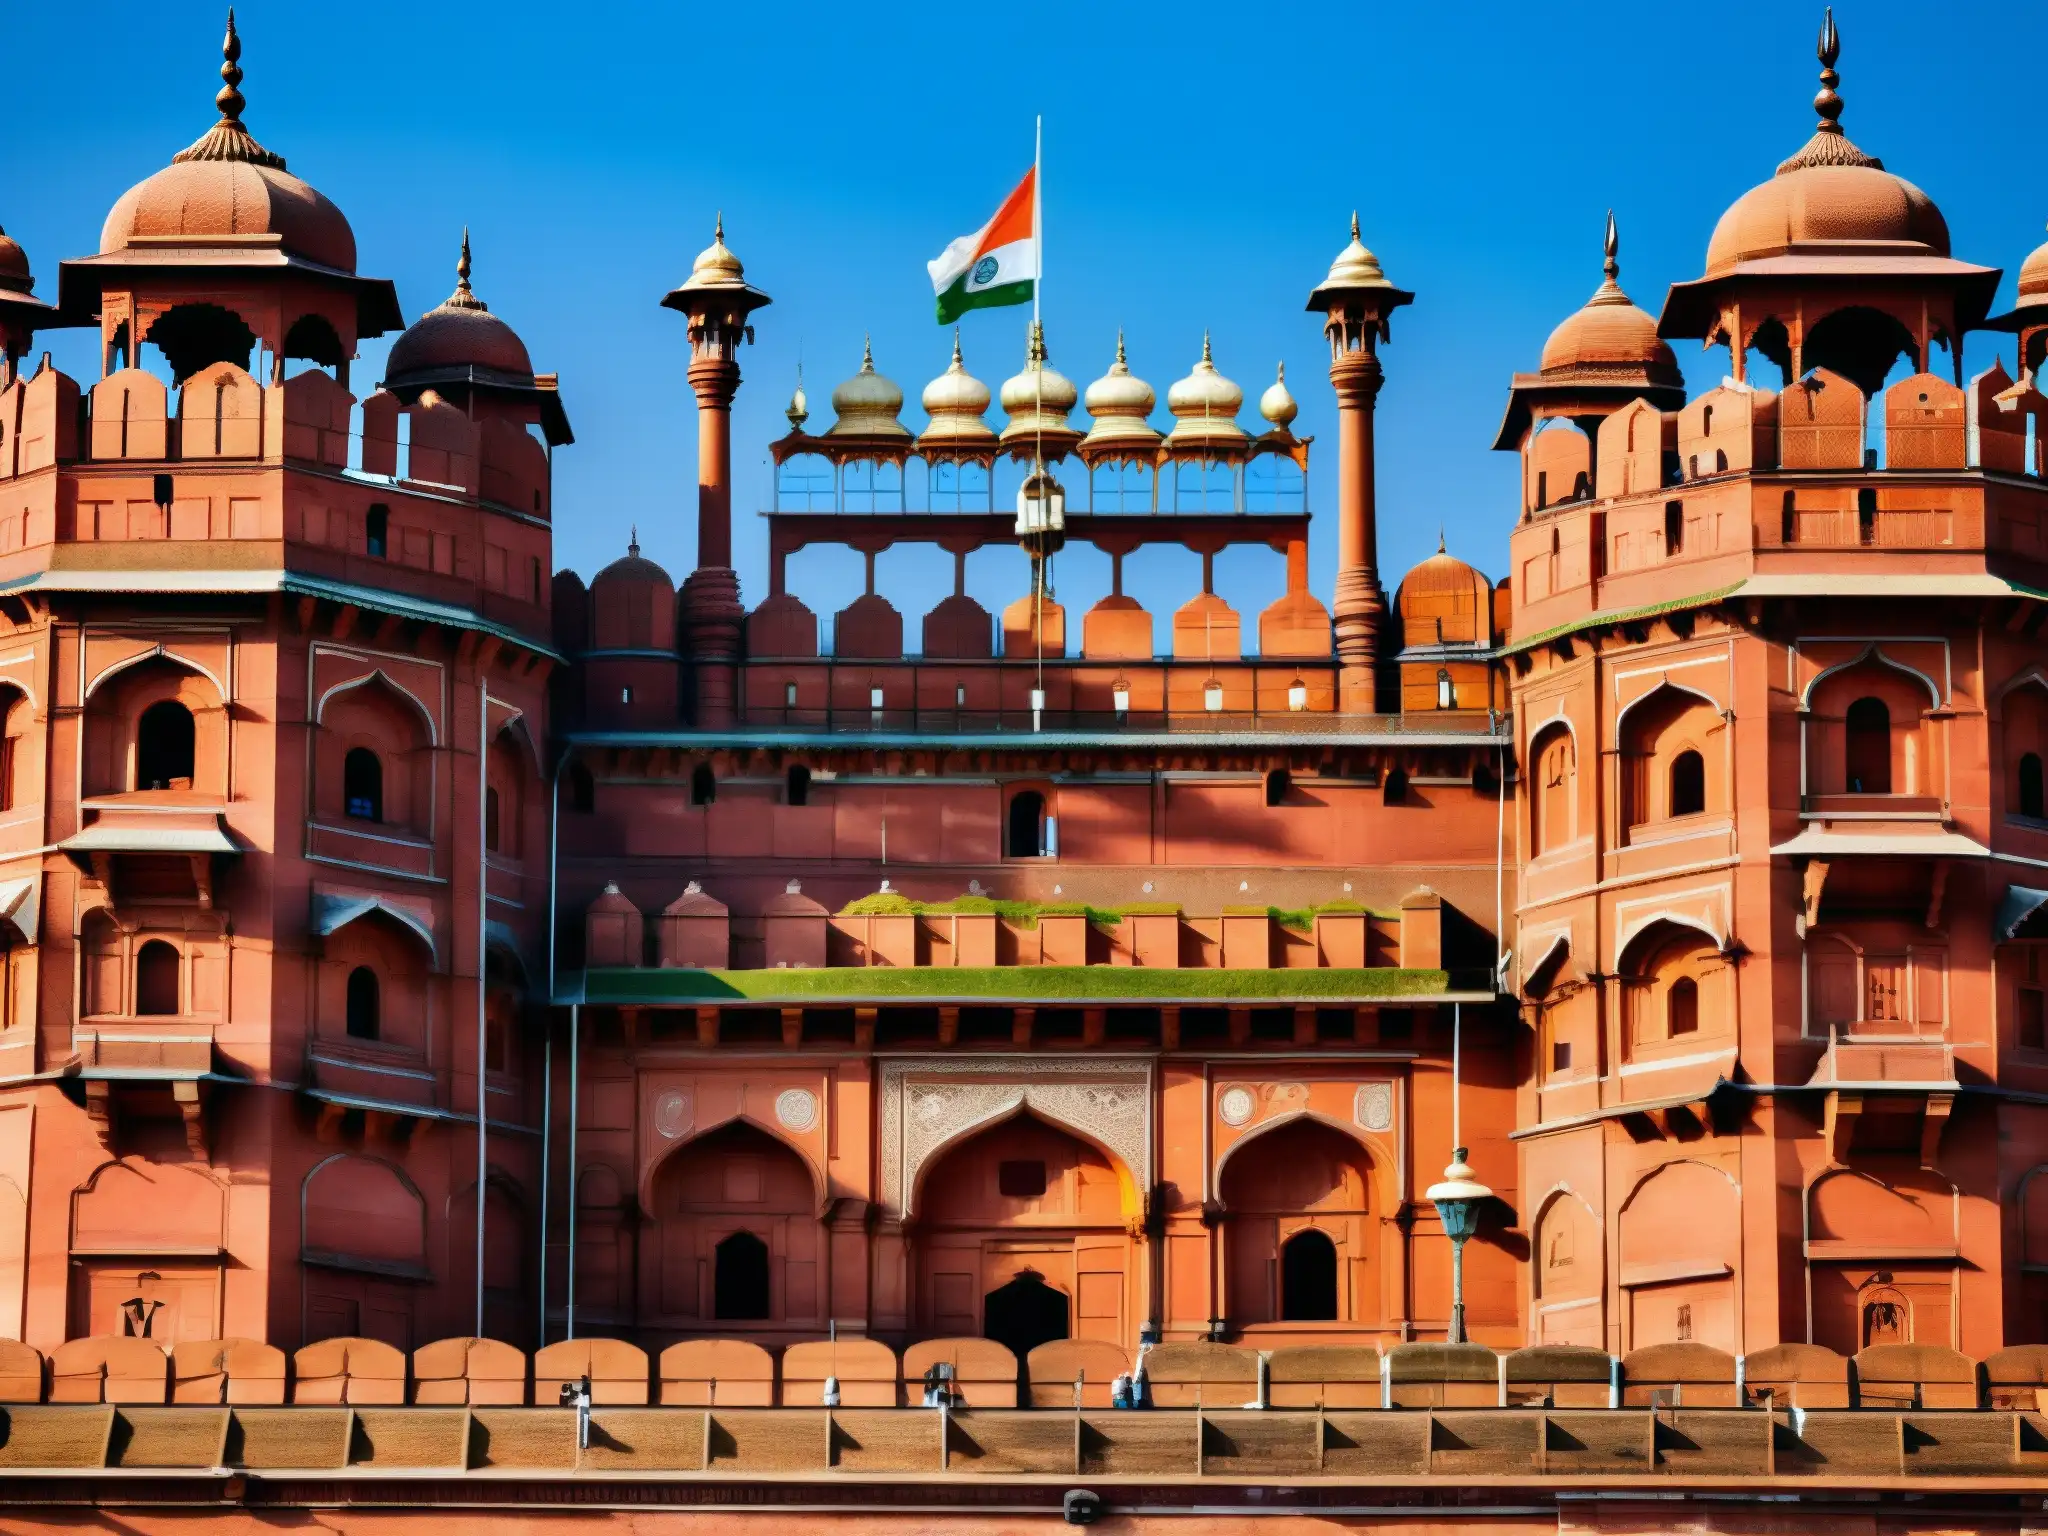 El impresionante Fuerte Rojo en Delhi, India, muestra su intrincada arquitectura de arenisca roja